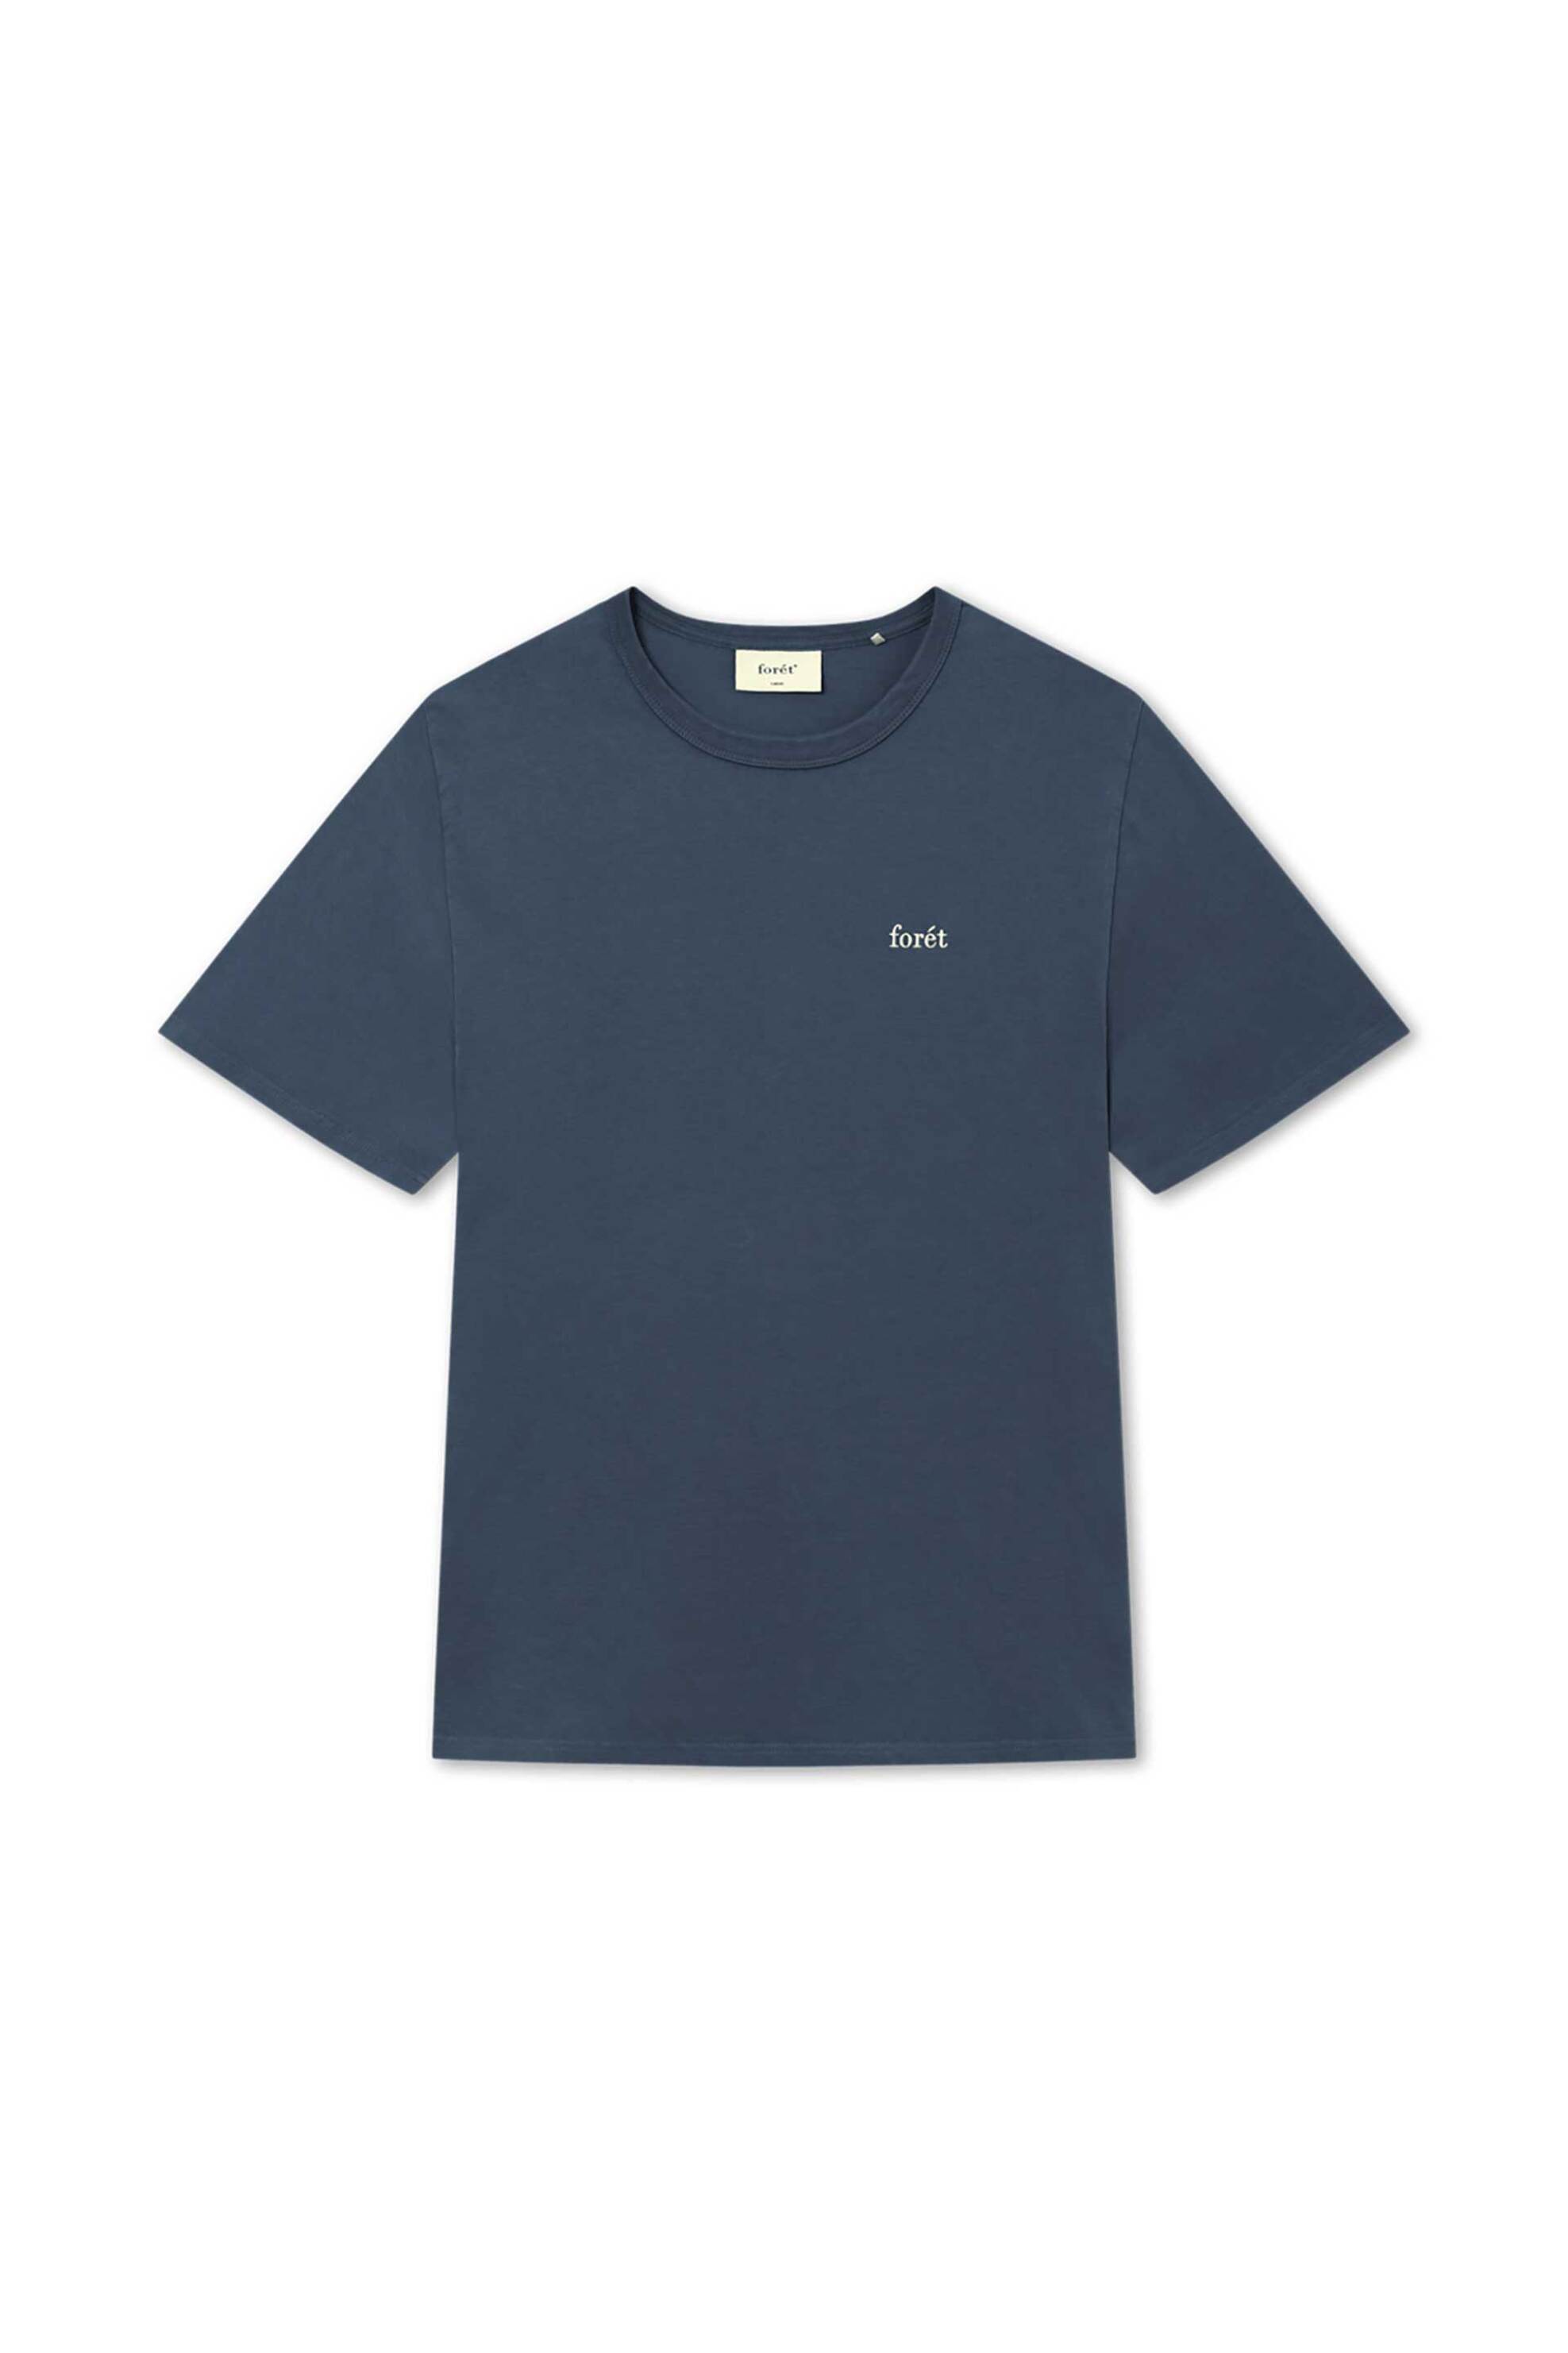 Ανδρική Μόδα > Ανδρικά Ρούχα > Ανδρικές Μπλούζες > Ανδρικά T-Shirts Forét ανδρικό T-shirt μονόχρωμο με κεντημένο λογότυπο Loose Fit "Bass" - F4013 Μπλε Σκούρο